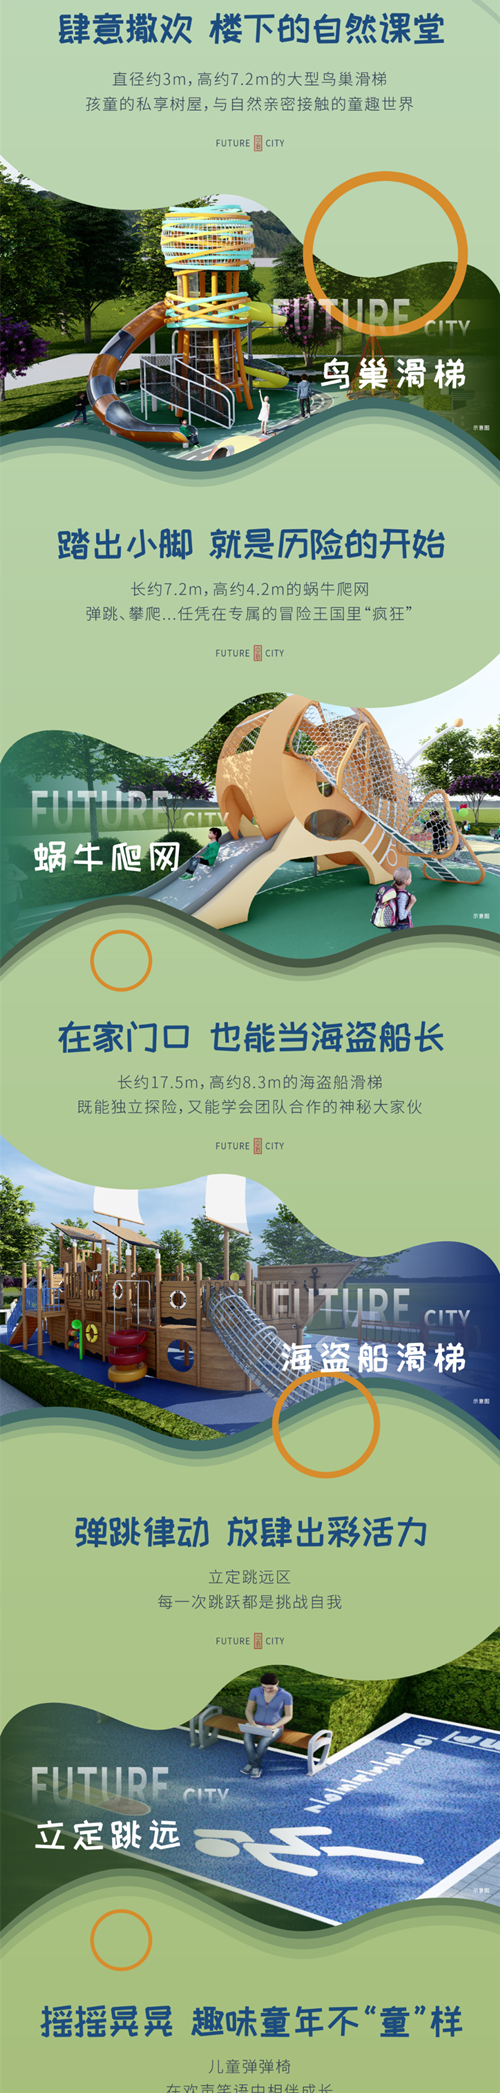 涿州中冶未来城社区儿童乐园-孩子成长的“刚需”!